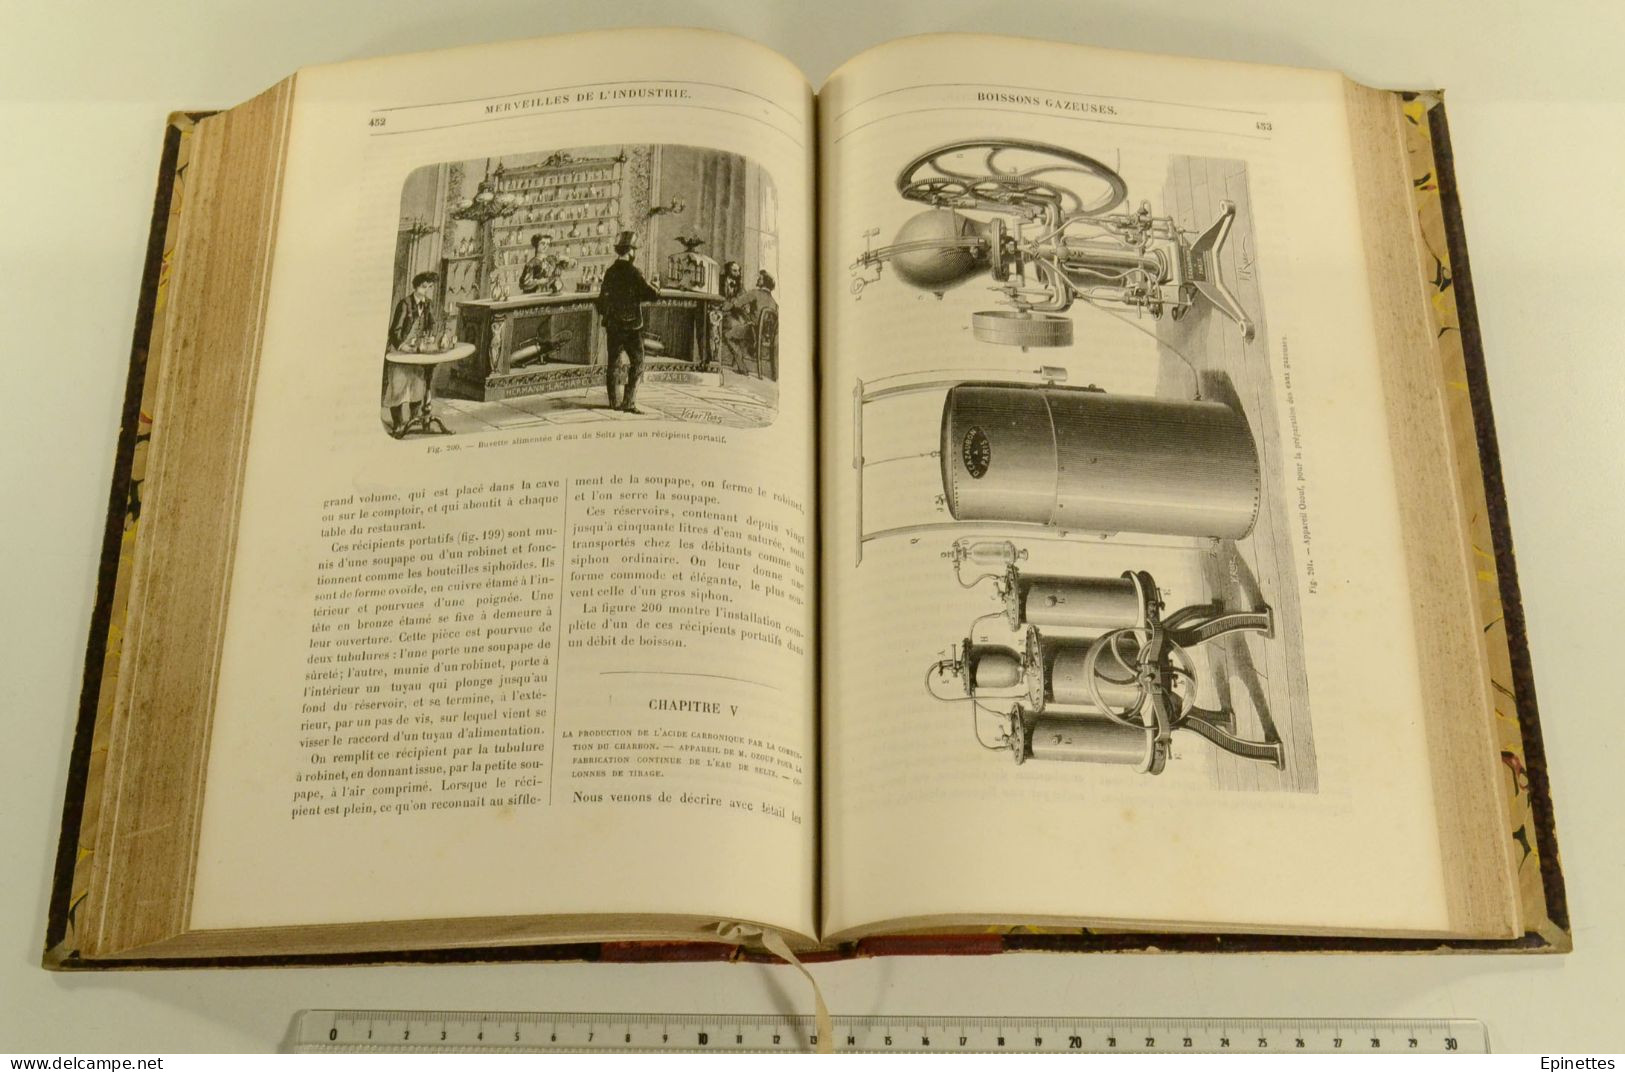 Les Merveilles de l'Industrie, tome 3, Louis FIGUIER. Industries chimiques, l'eau, etc. Vers 1875